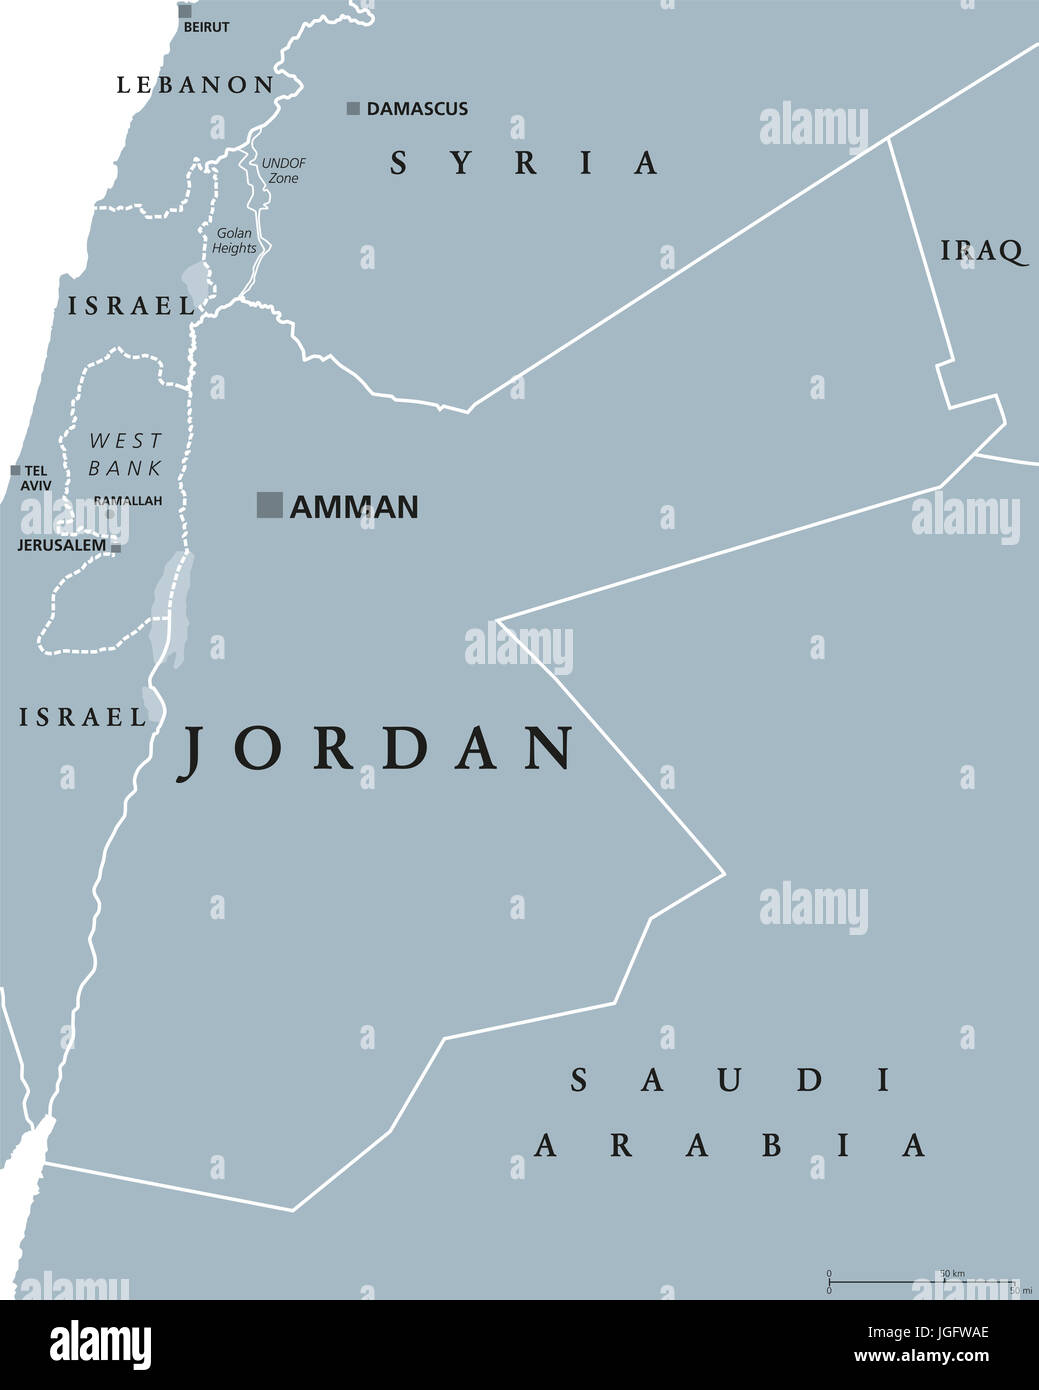 Jordan politische Karte mit Hauptstadt Amman. Haschemitischen Königreich Jordanien, einem arabischen Land im Nahen Osten und westlichen Asien. Graue Abbildung. Stockfoto